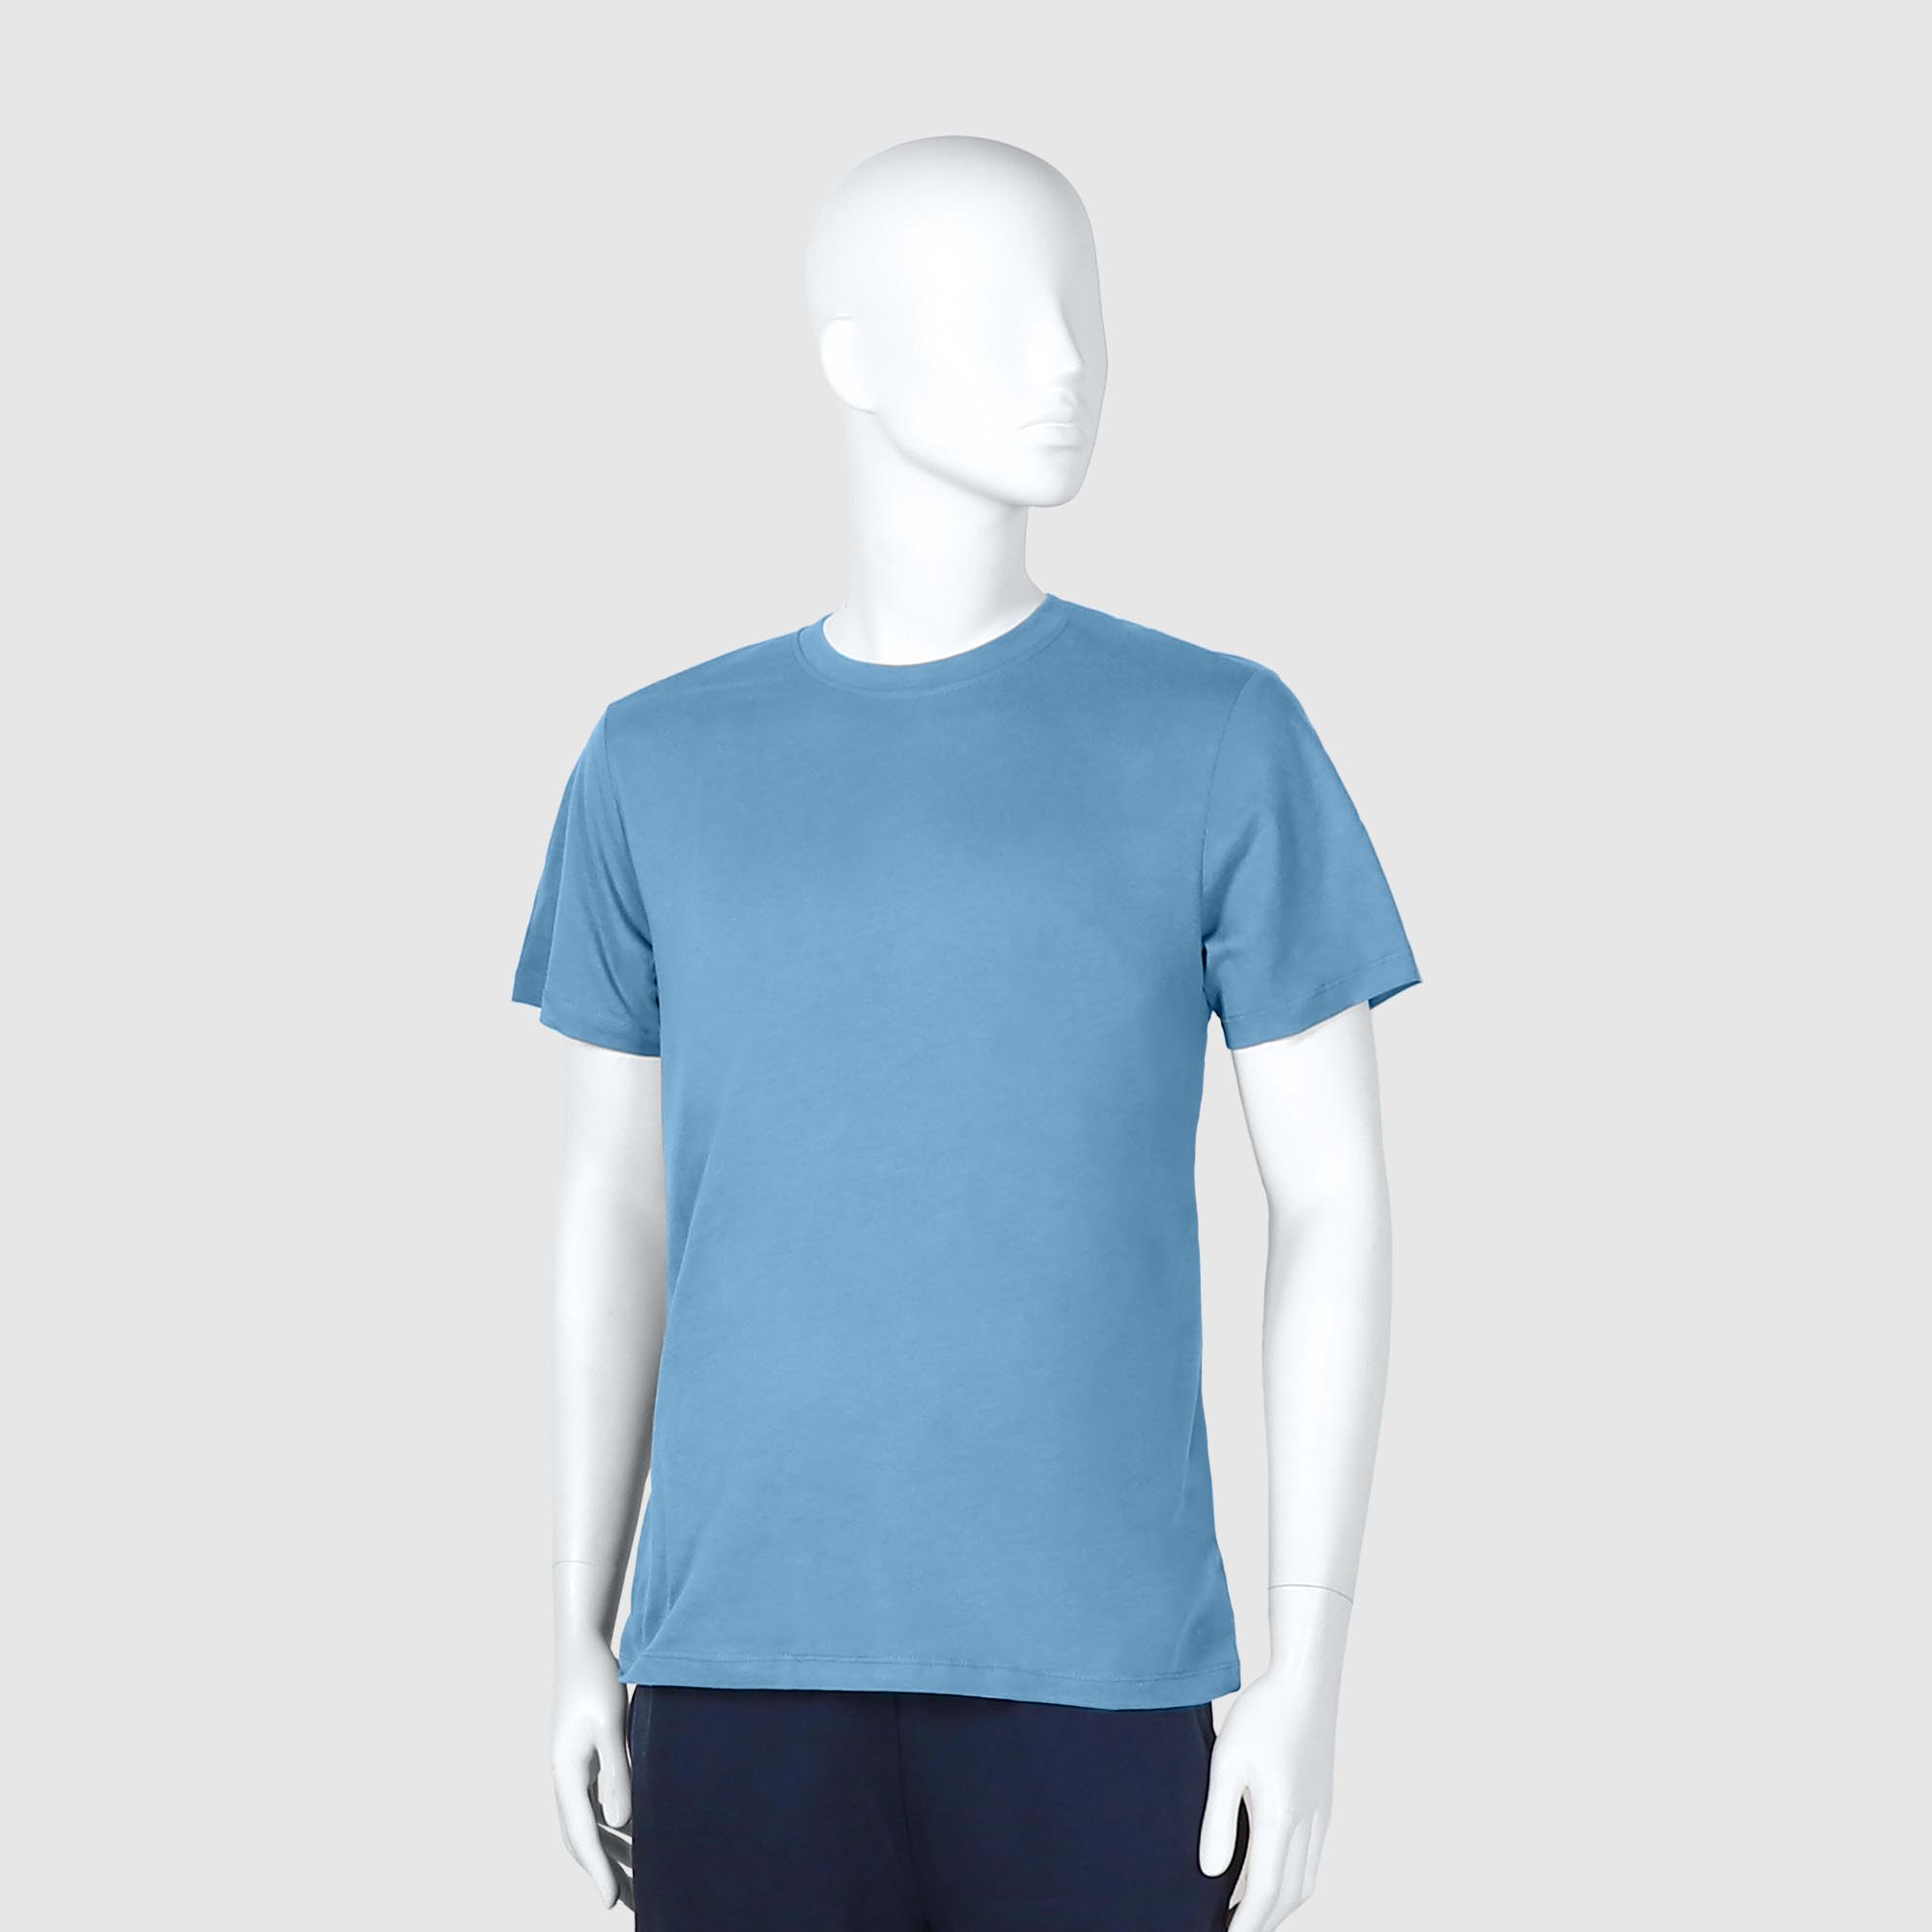 Мужская футболка Diva Teks голубая (DTD-03), цвет голубой, размер 52-54